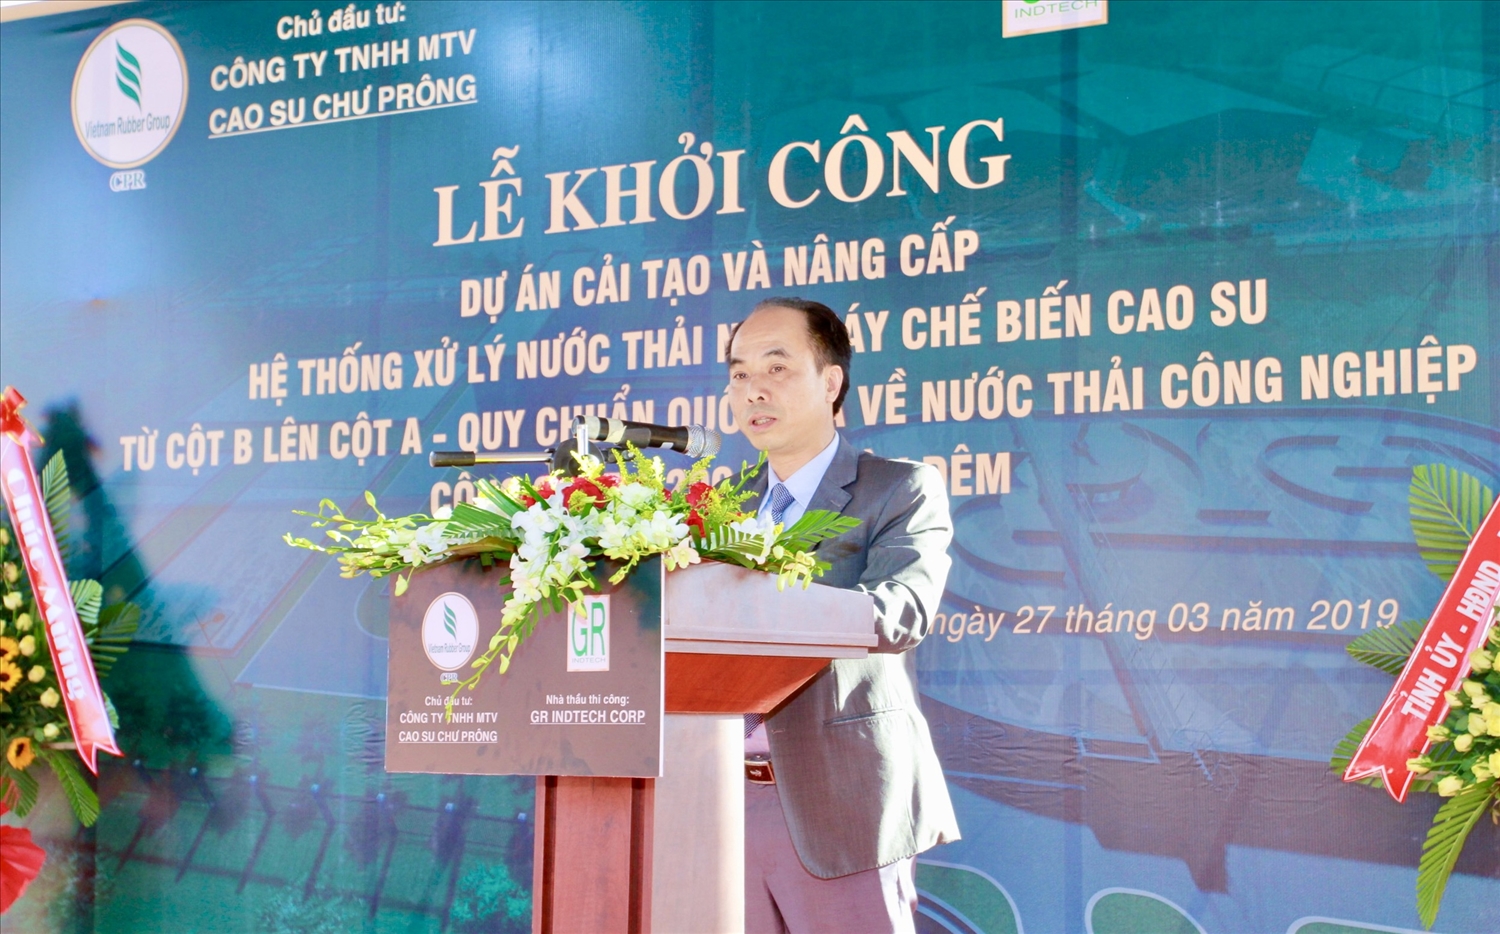 Ông Võ Toàn Thắng, Bí thư Đảng ủy, Tổng Giám đốc Công ty TNHH một thành viên Cao su Chư Prông phát biểu tại Lễ khởi công Dự án cải tạo và nâng cấp hệ thống xử lý nước thải Nhà máy chế biến cao su